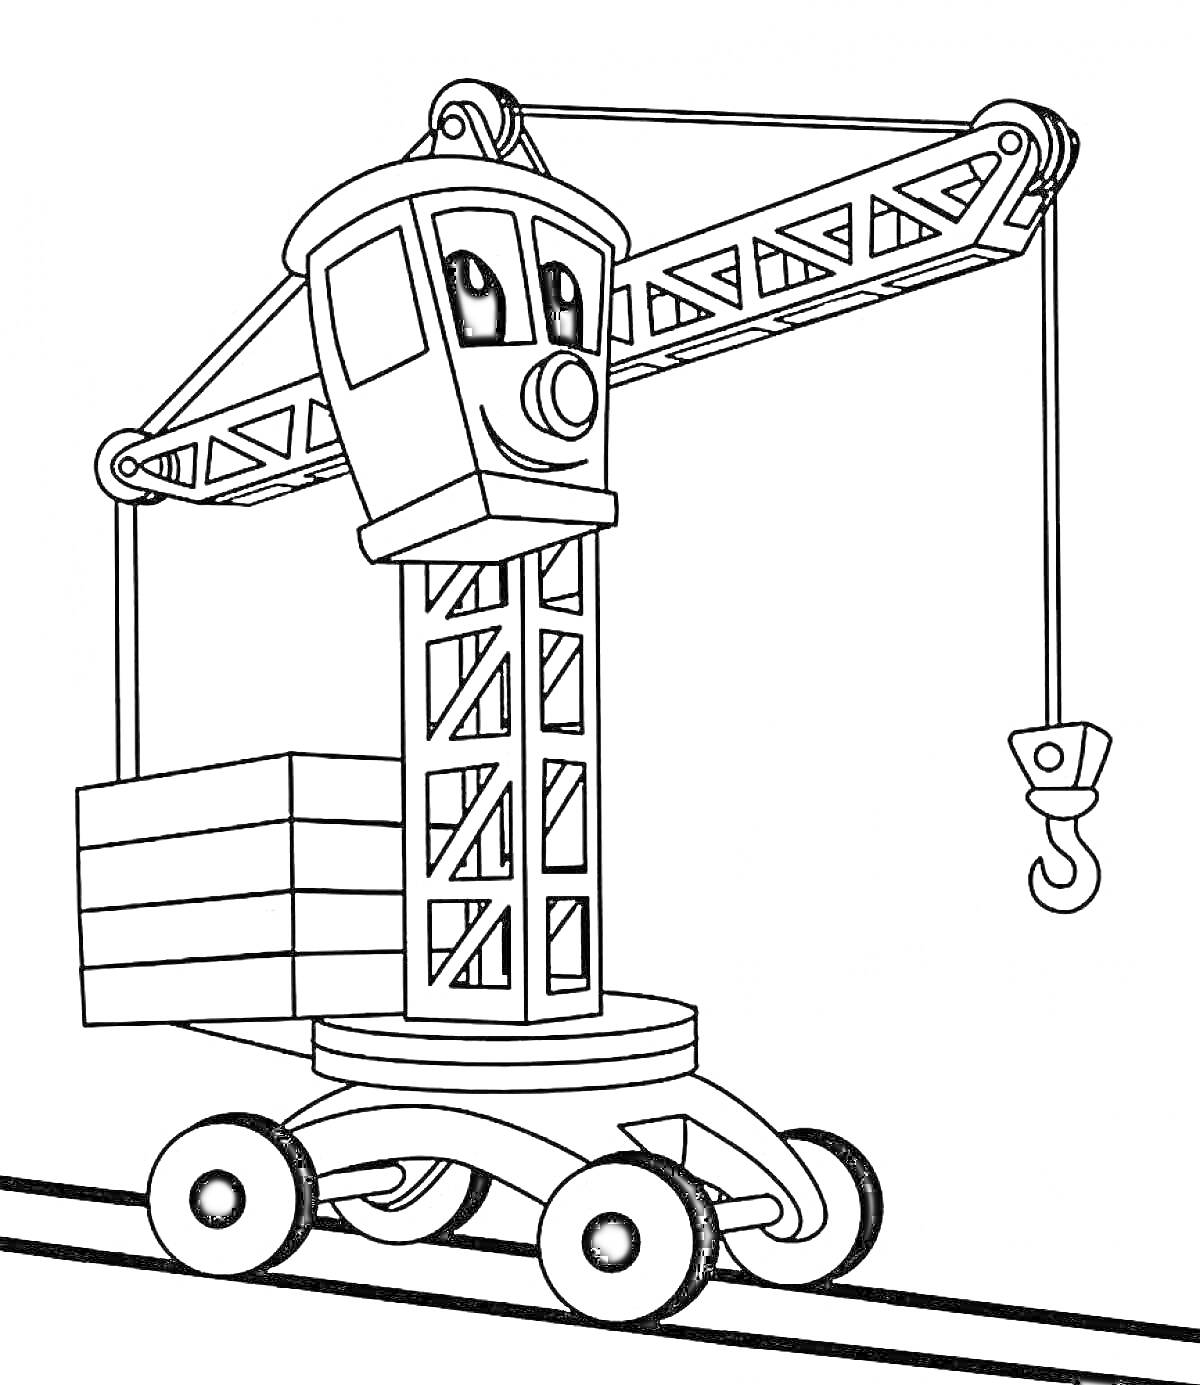 Смышленый строительный кран на колёсах с крюком и грузом